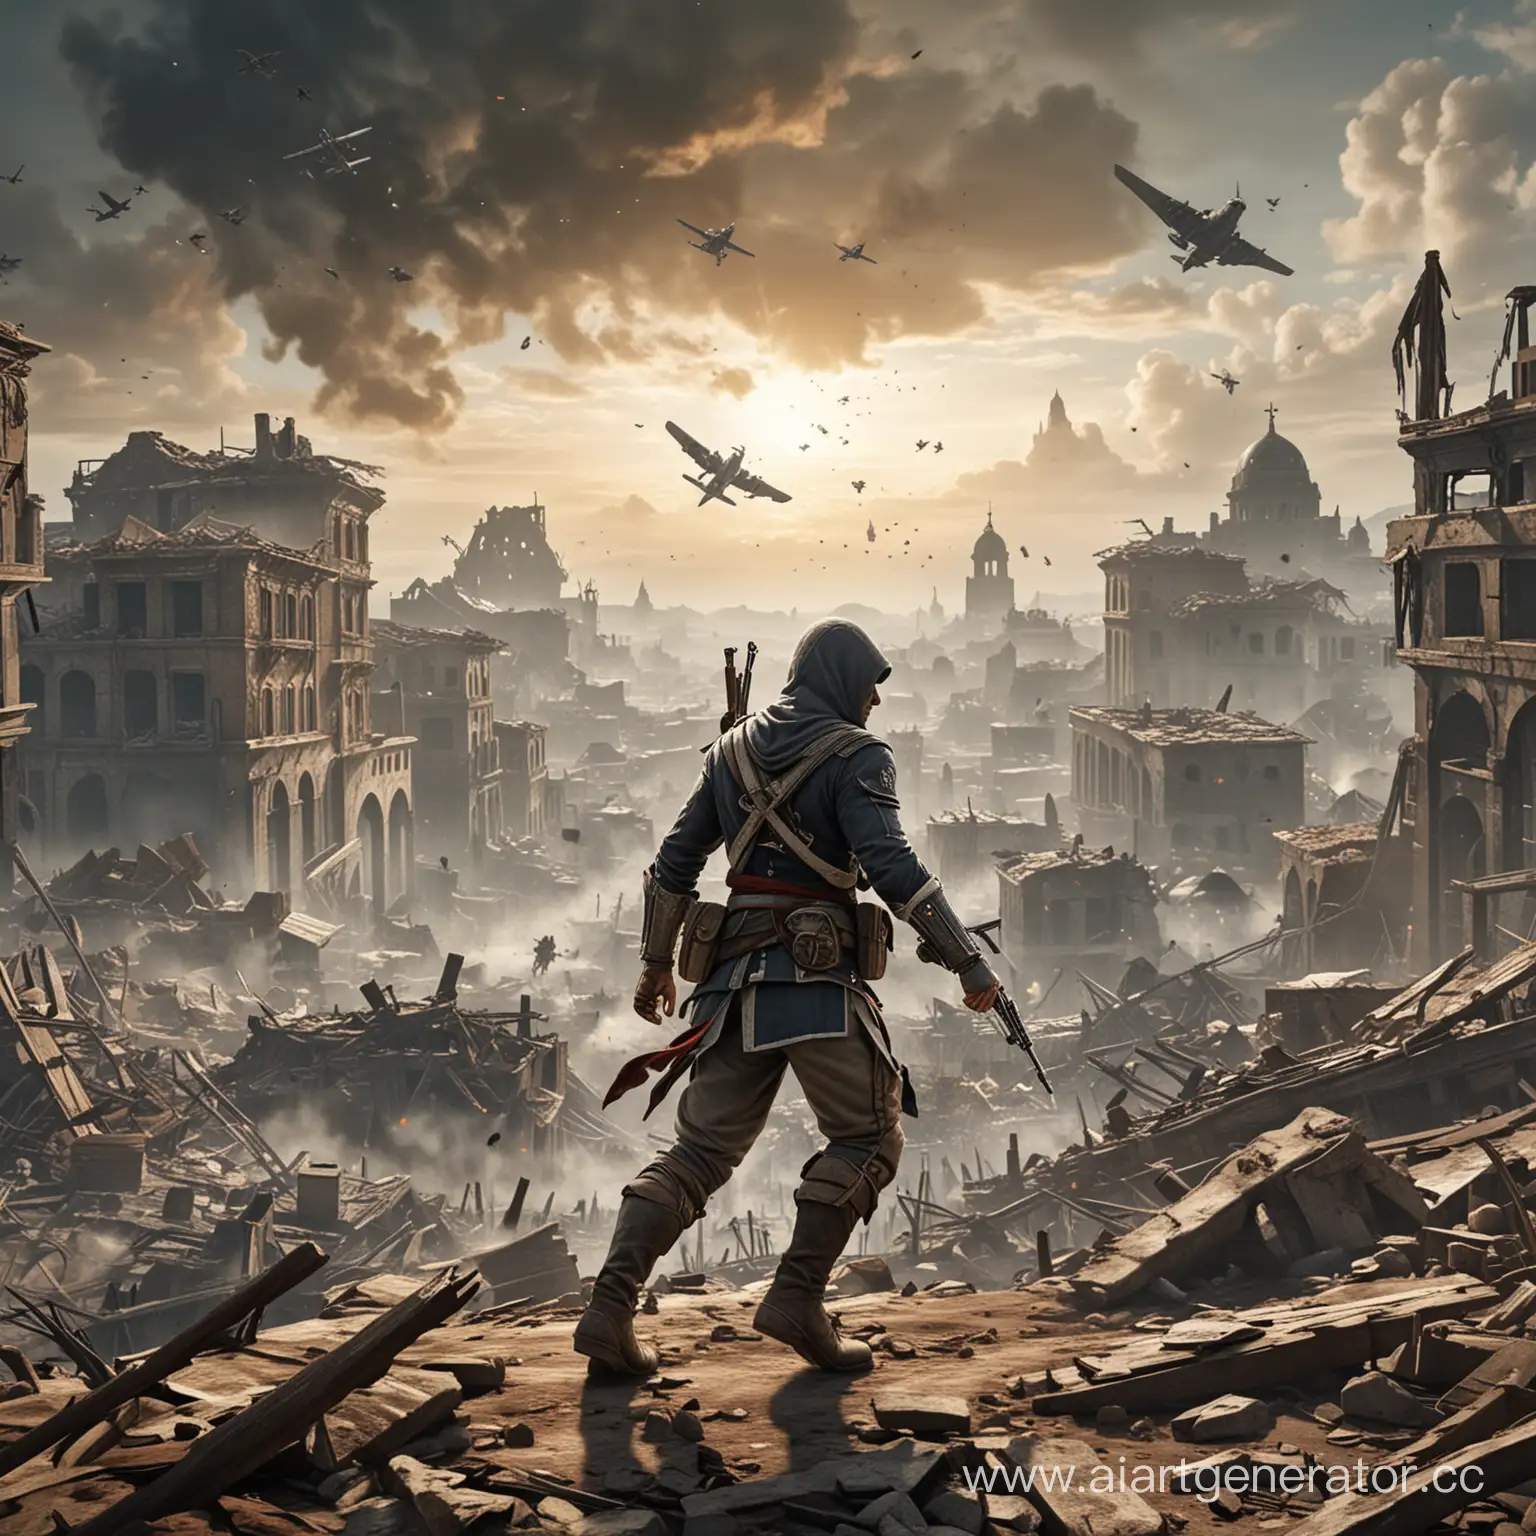 Главный герой в стиле Assassin's Creed атакует вражеского солдата в 1953 году, на фоне разрушенного города, где в небе пролетают бомбардировщики Германии.